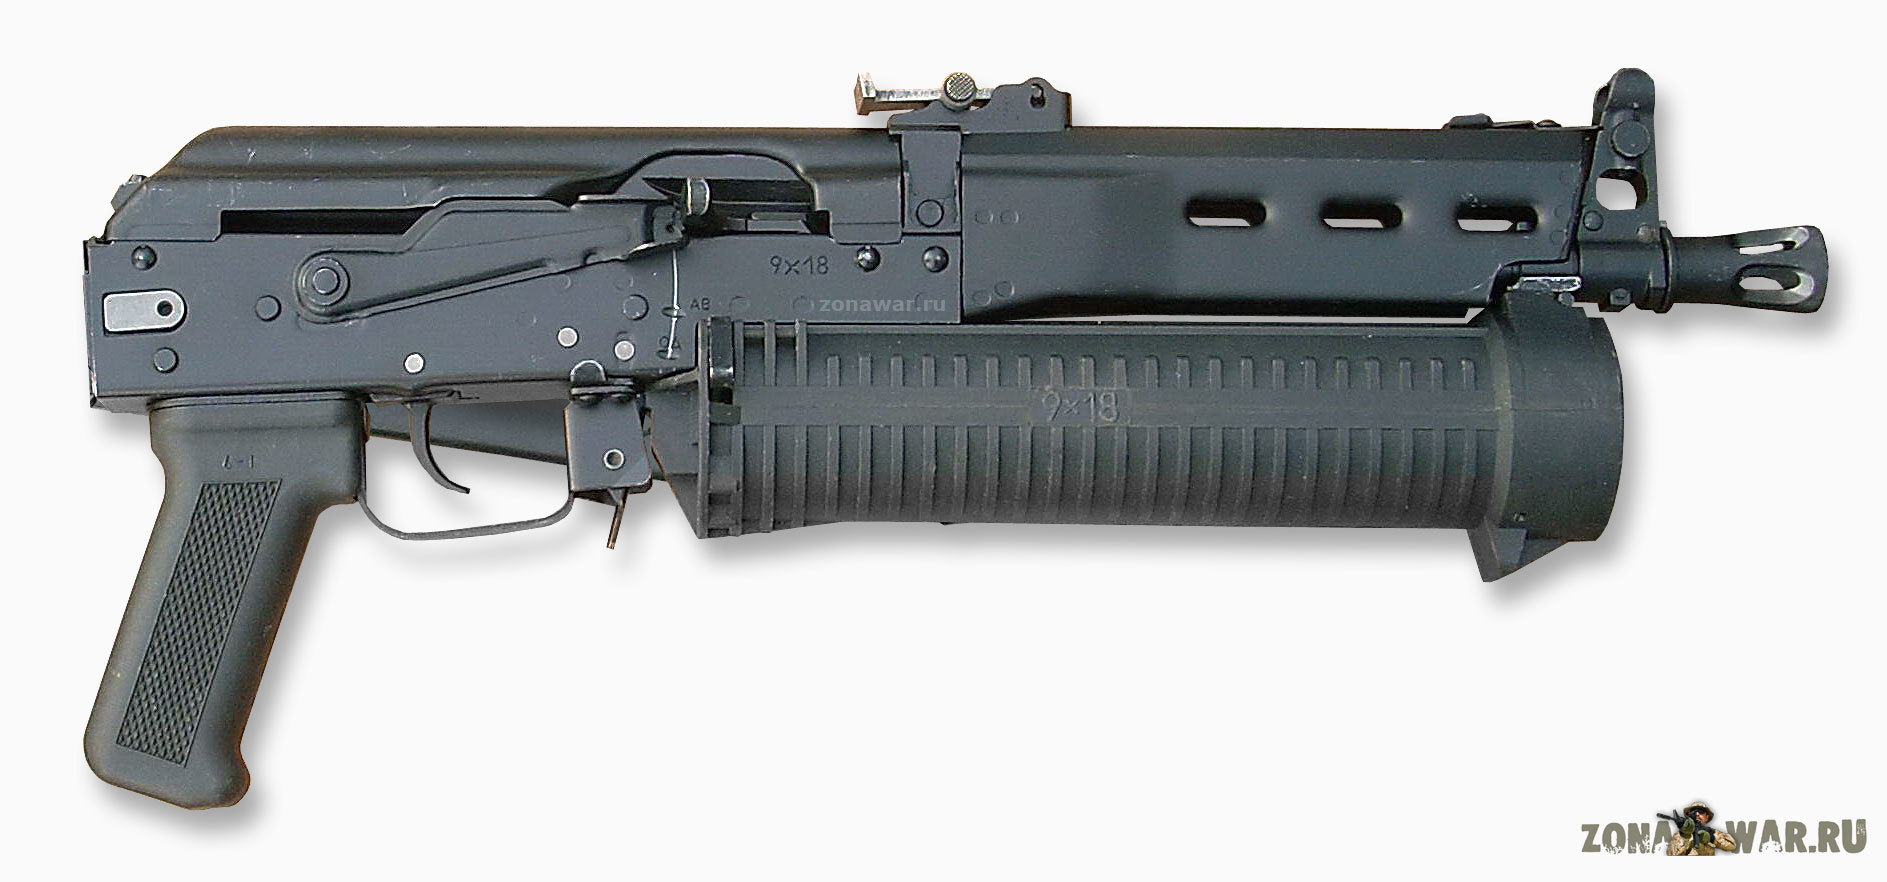 «Bizon-2» submachine gun with a folded stock